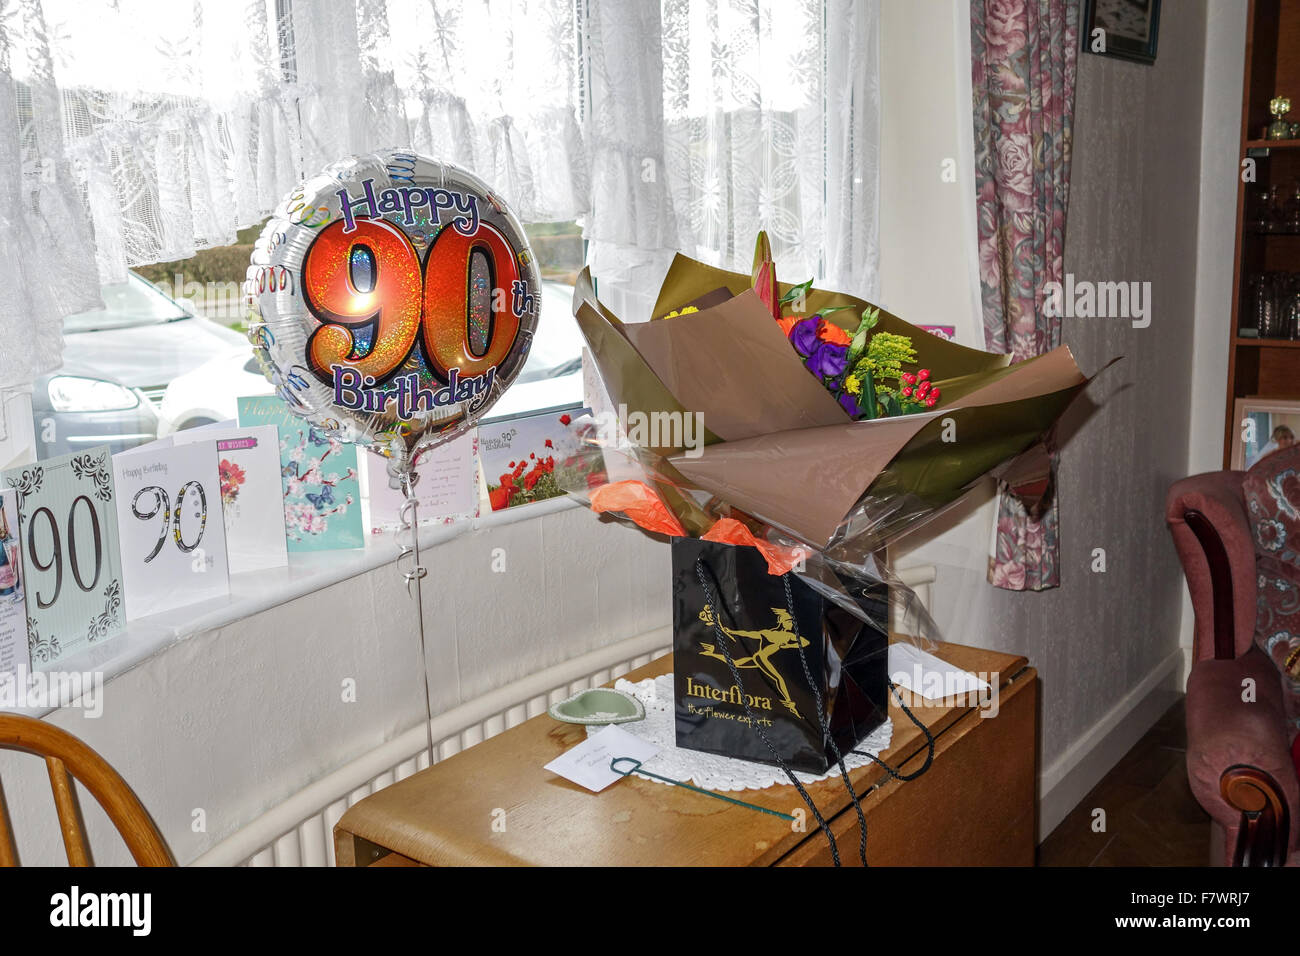 Globo con 90 Feliz cumpleaños, tarjetas y un ramo de flores Foto de stock